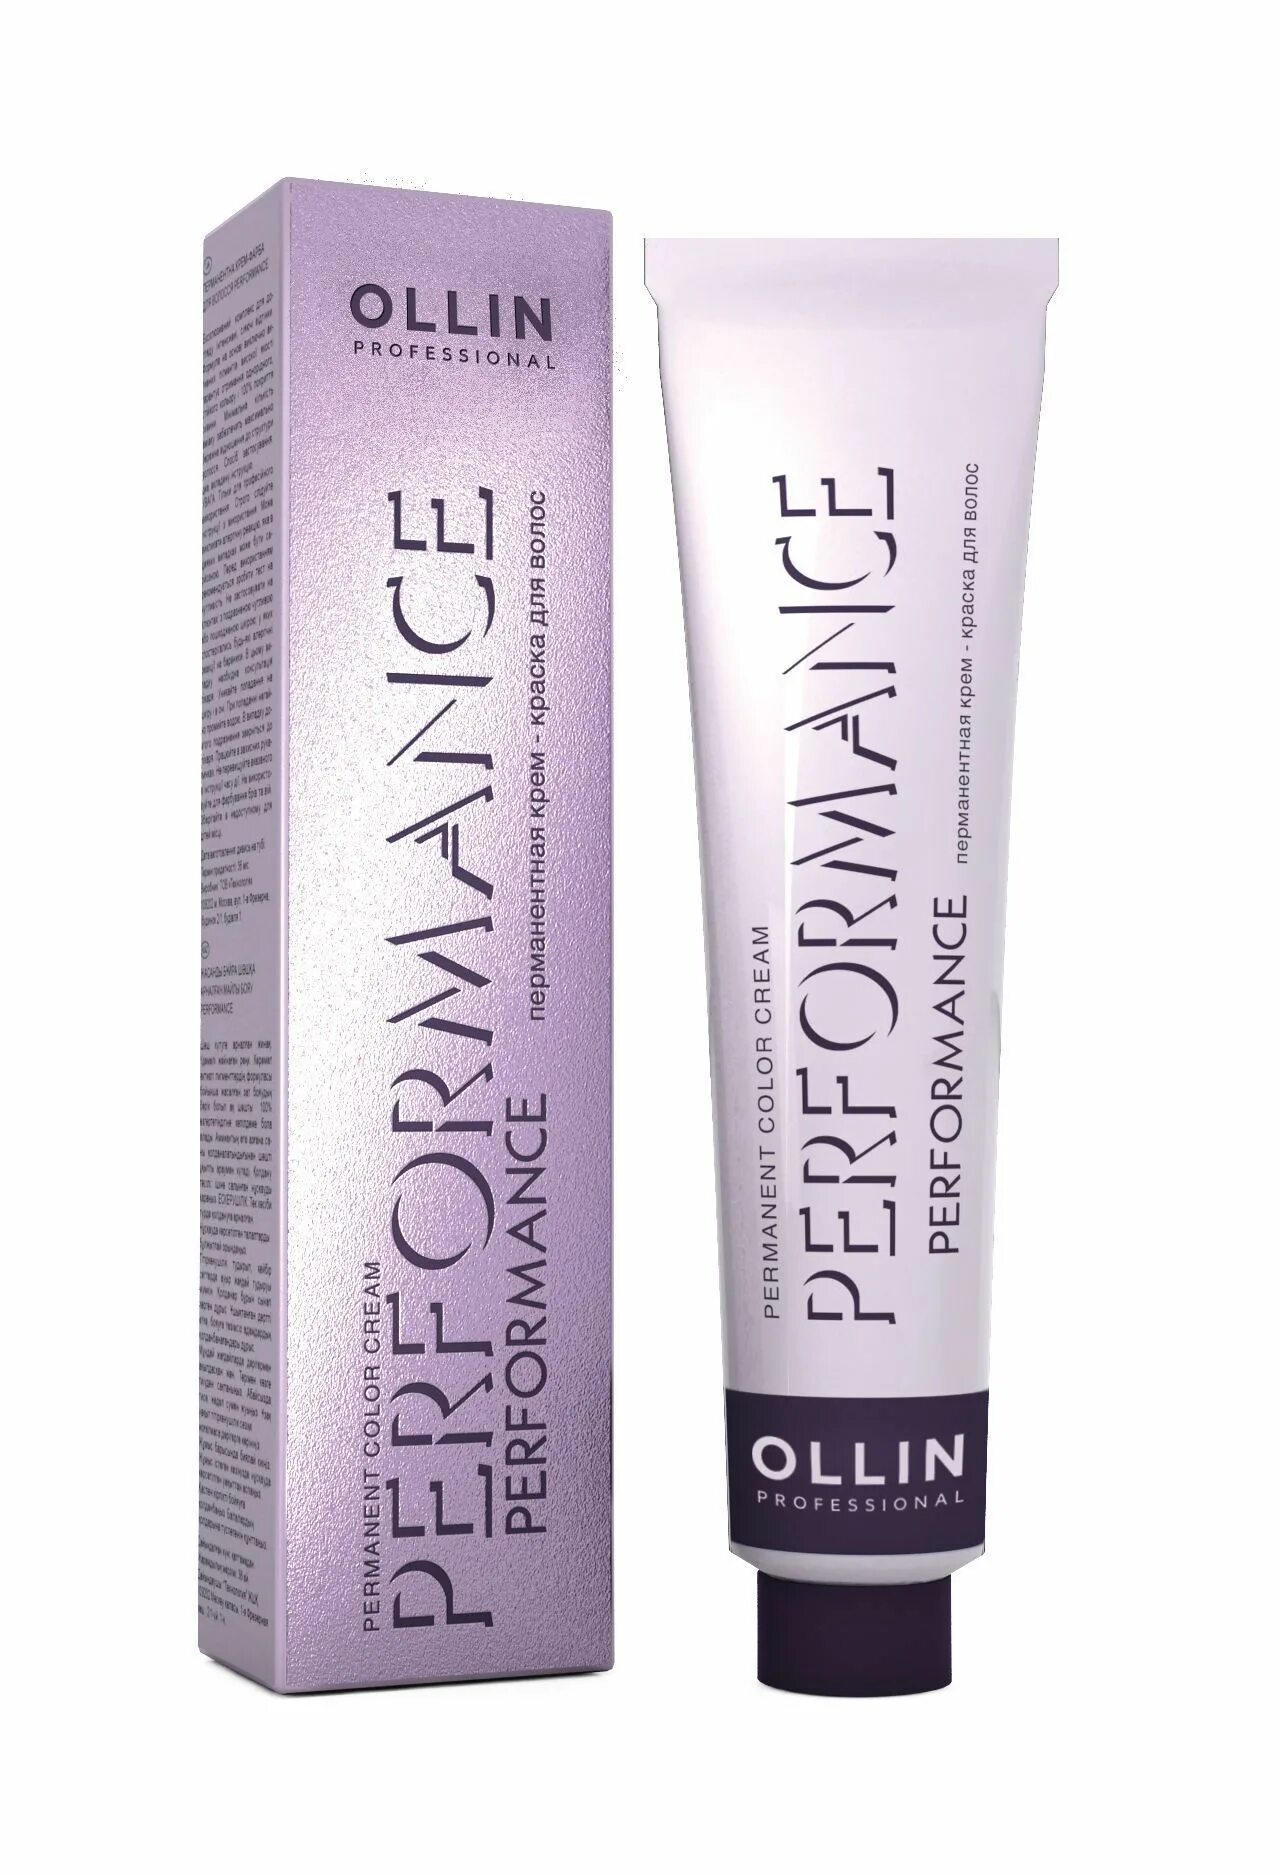 Ollin Performance 0/88 синий 60мл. Краска Оллин перфоманс 10.26. Ollin Performance 6/5. Ollin Performance 0/0 нейтральный 60мл.